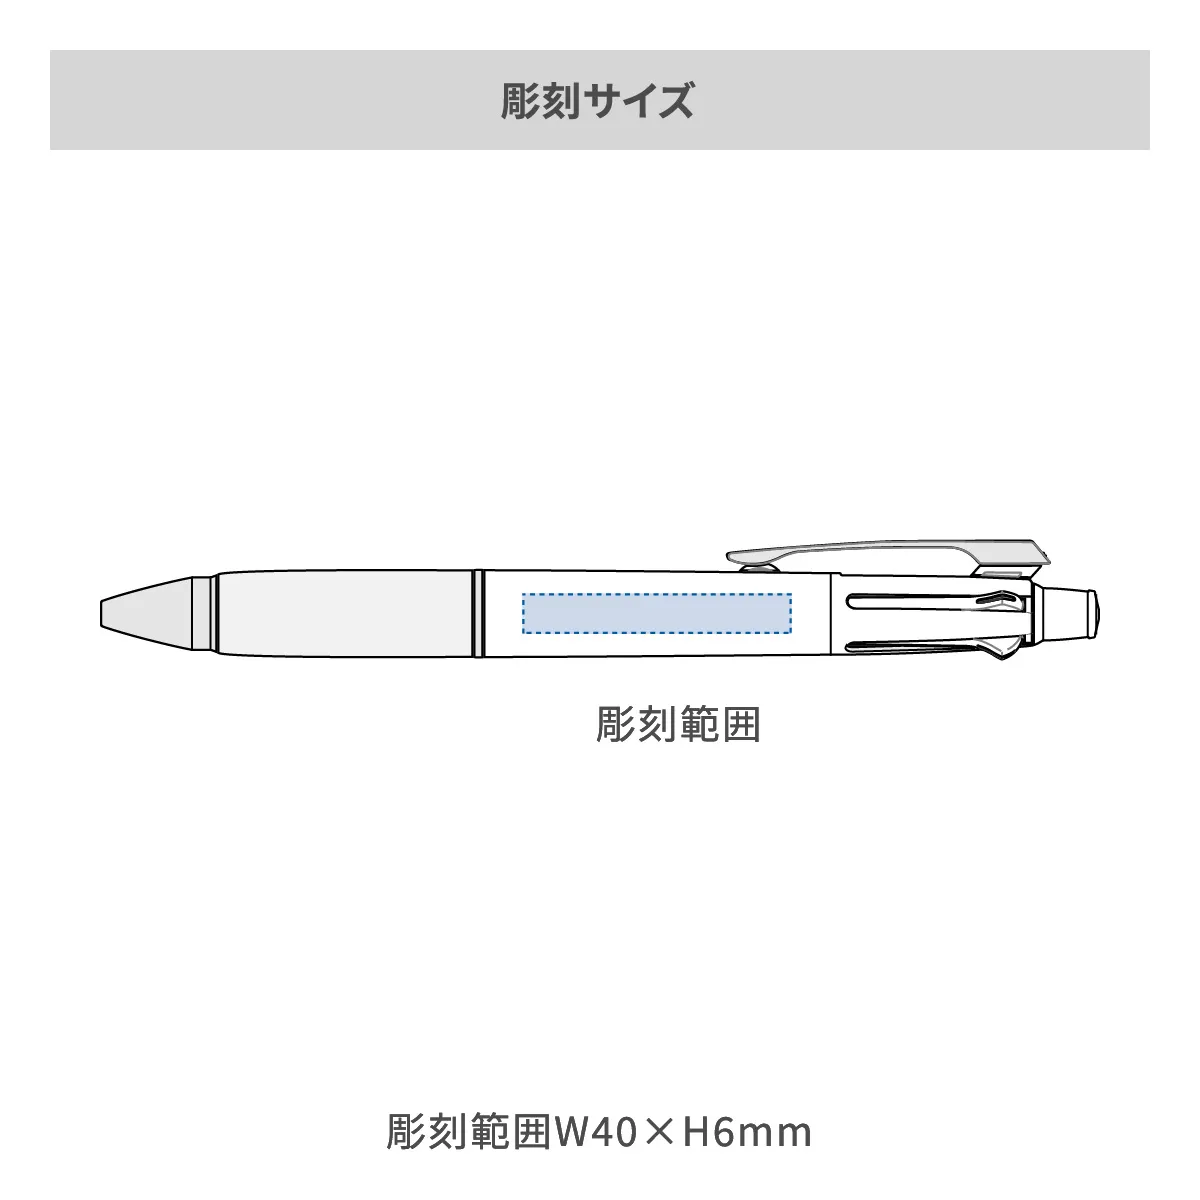 【短納期】三菱鉛筆 ジェットストリーム 多機能ペン 4&1 0.5mm【多機能ペン / レーザー彫刻】 画像2